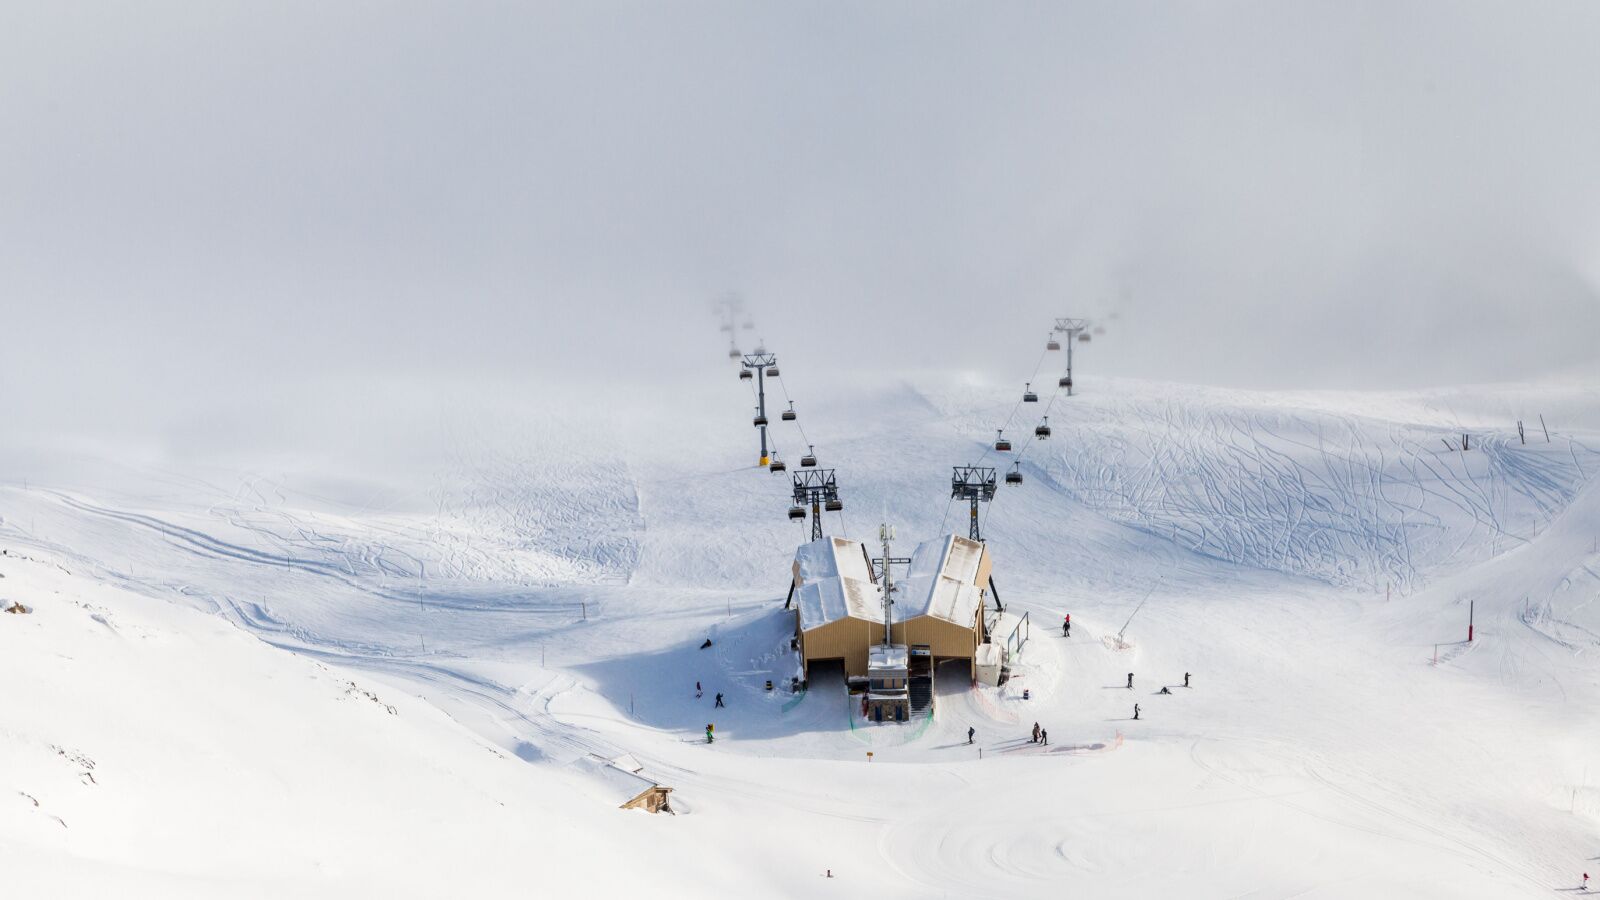 skiing in switzerland - st moritz aerial